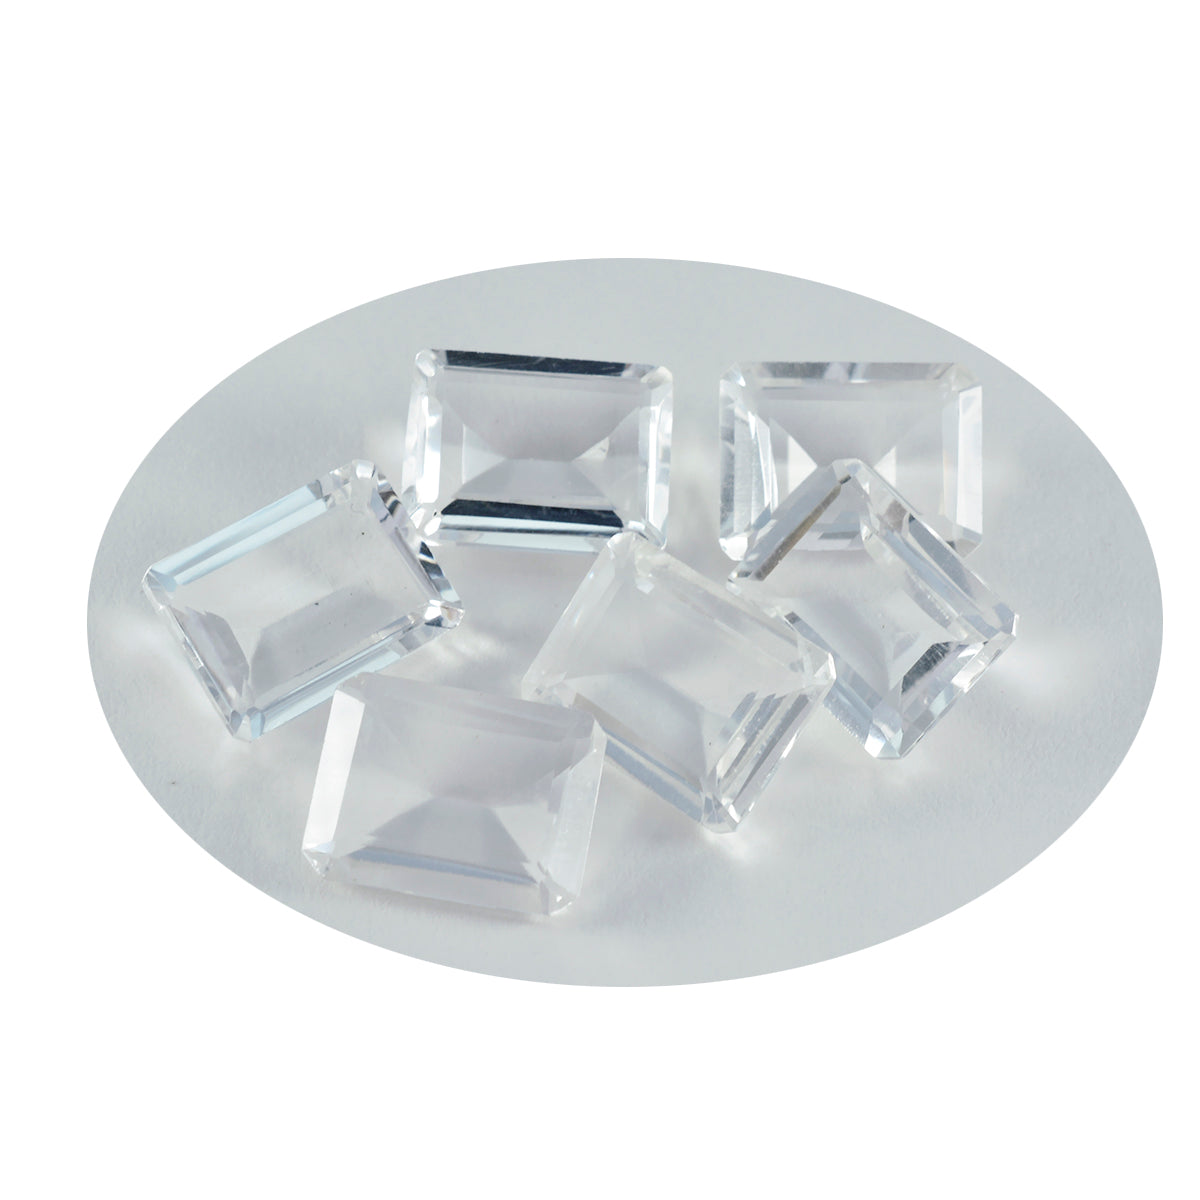 riyogems 1 шт., белый кристалл кварца, граненый 10x14 мм, восьмиугольная форма, красивый качественный драгоценный камень